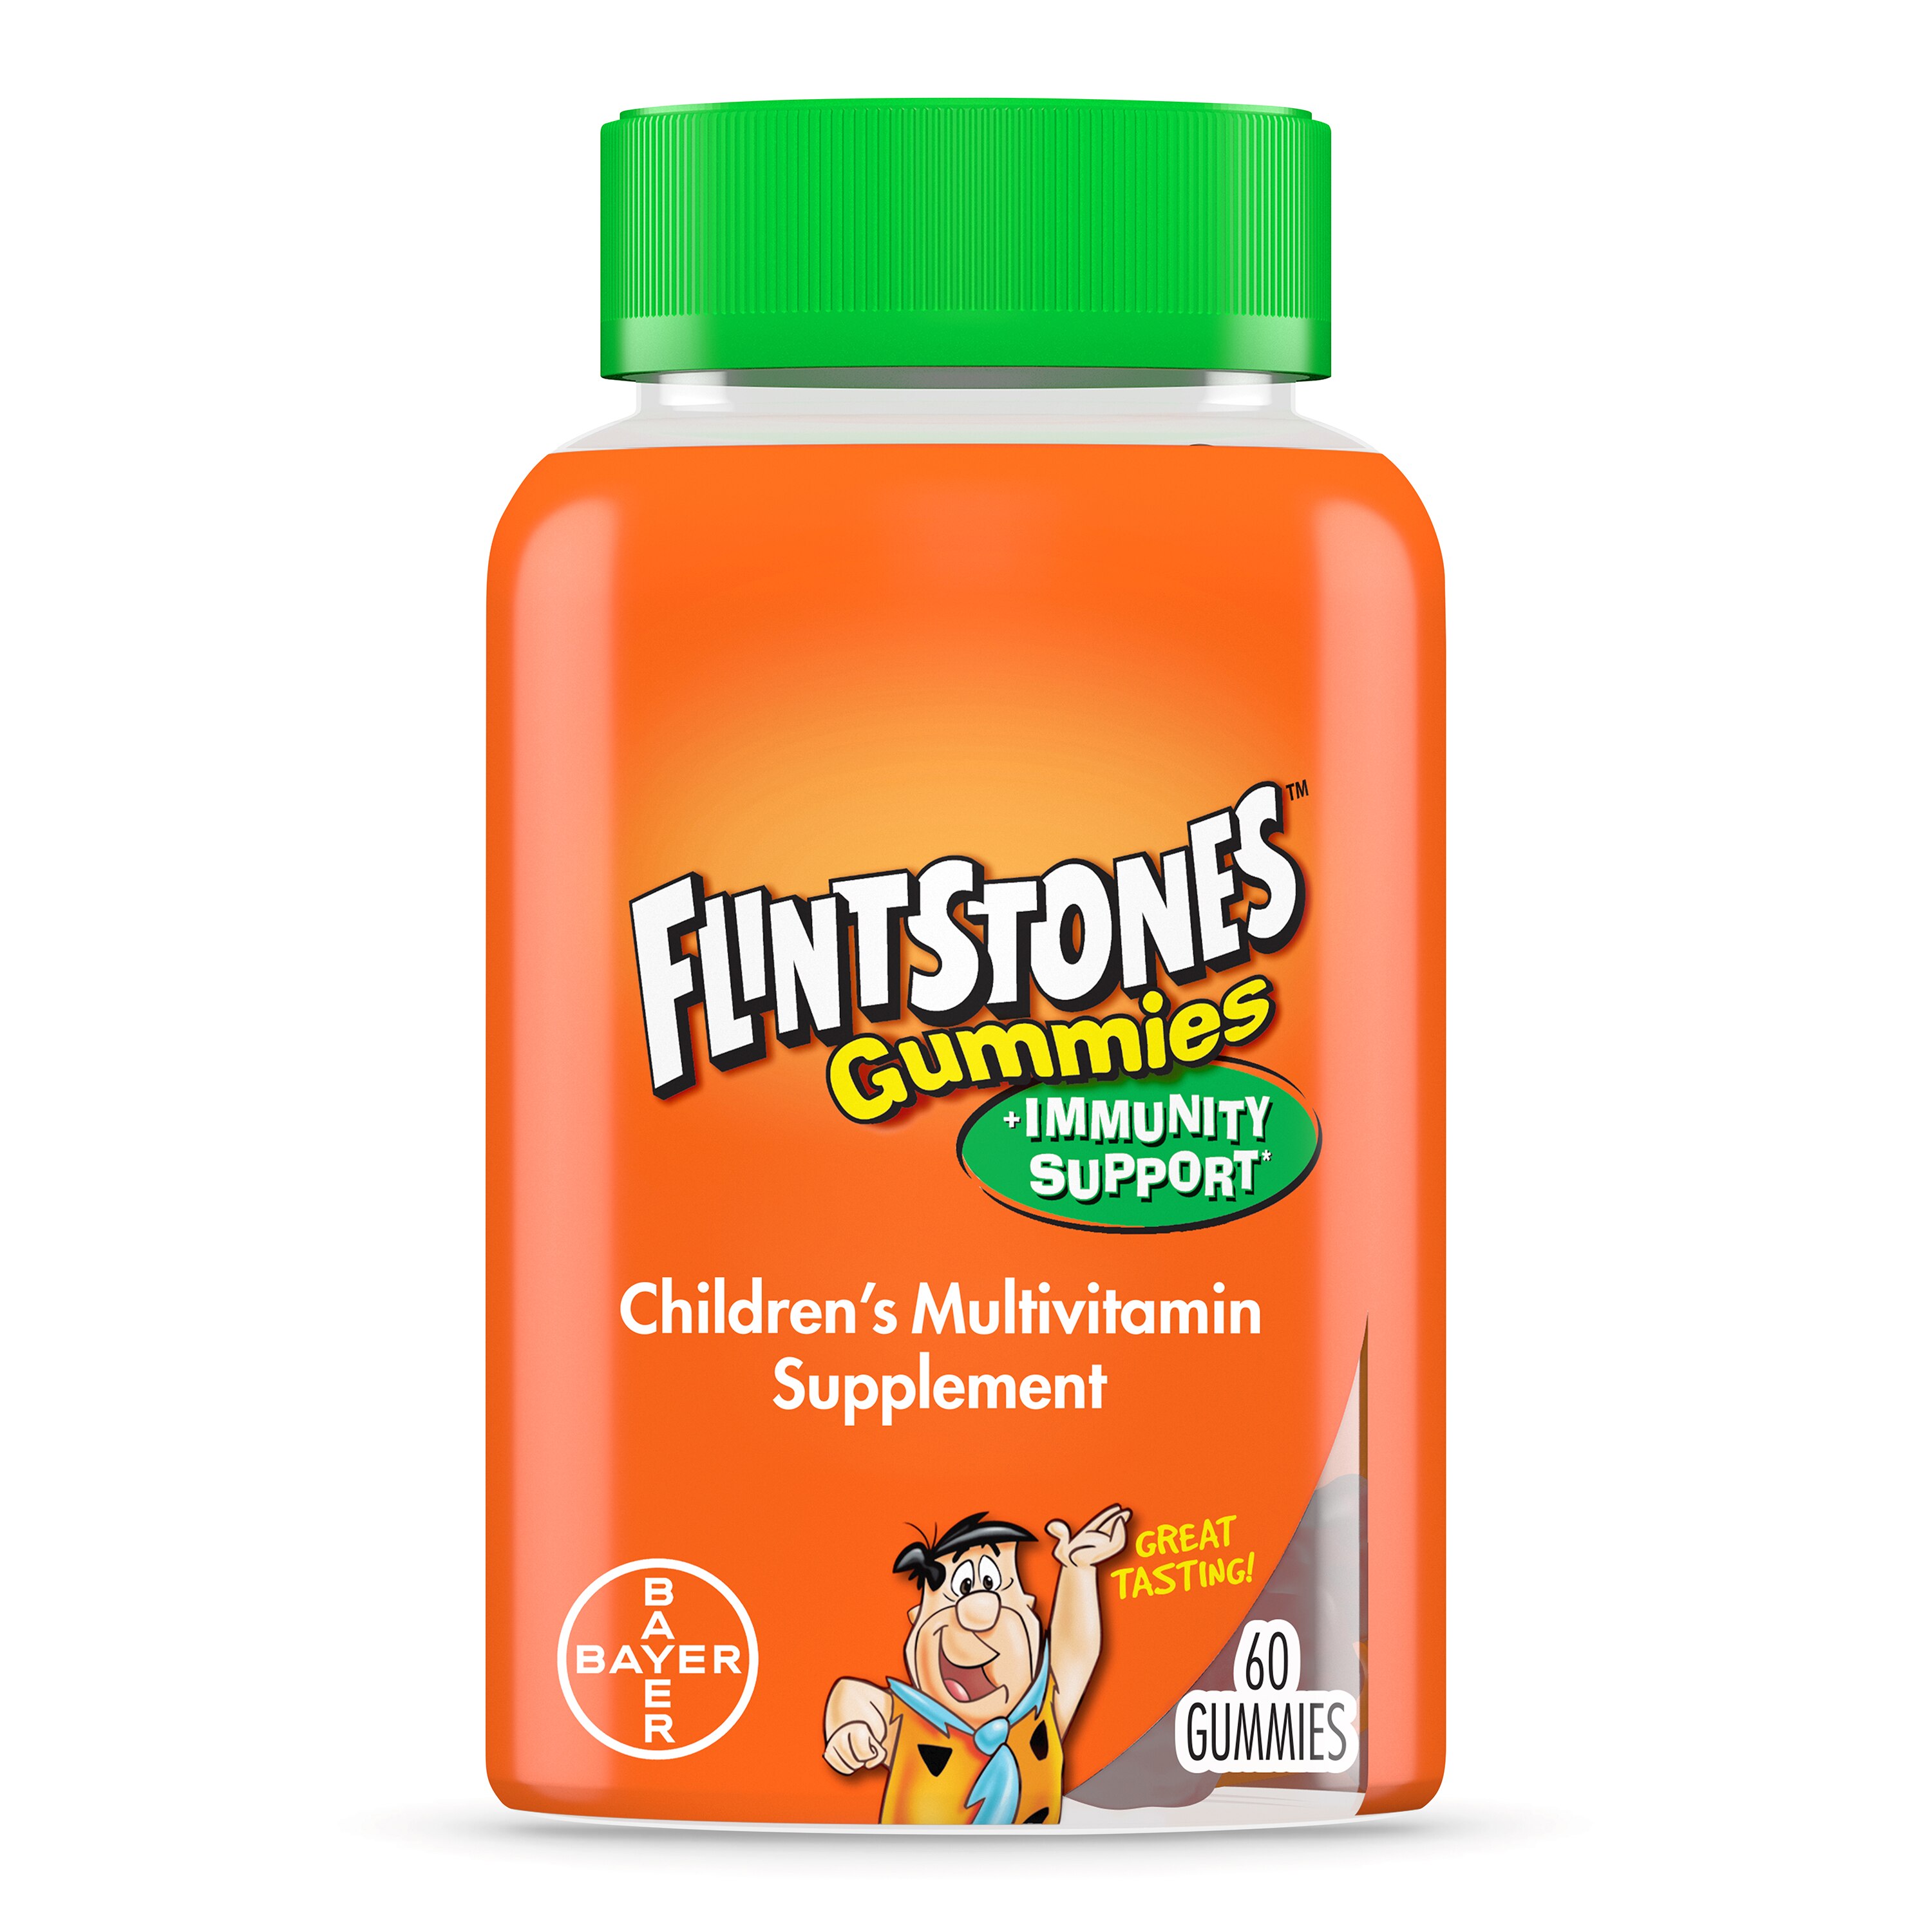 Flintstones Plus Immunity Support - Suplemento multivitamíco/multiminerales para niños en gomitas, 60 u.